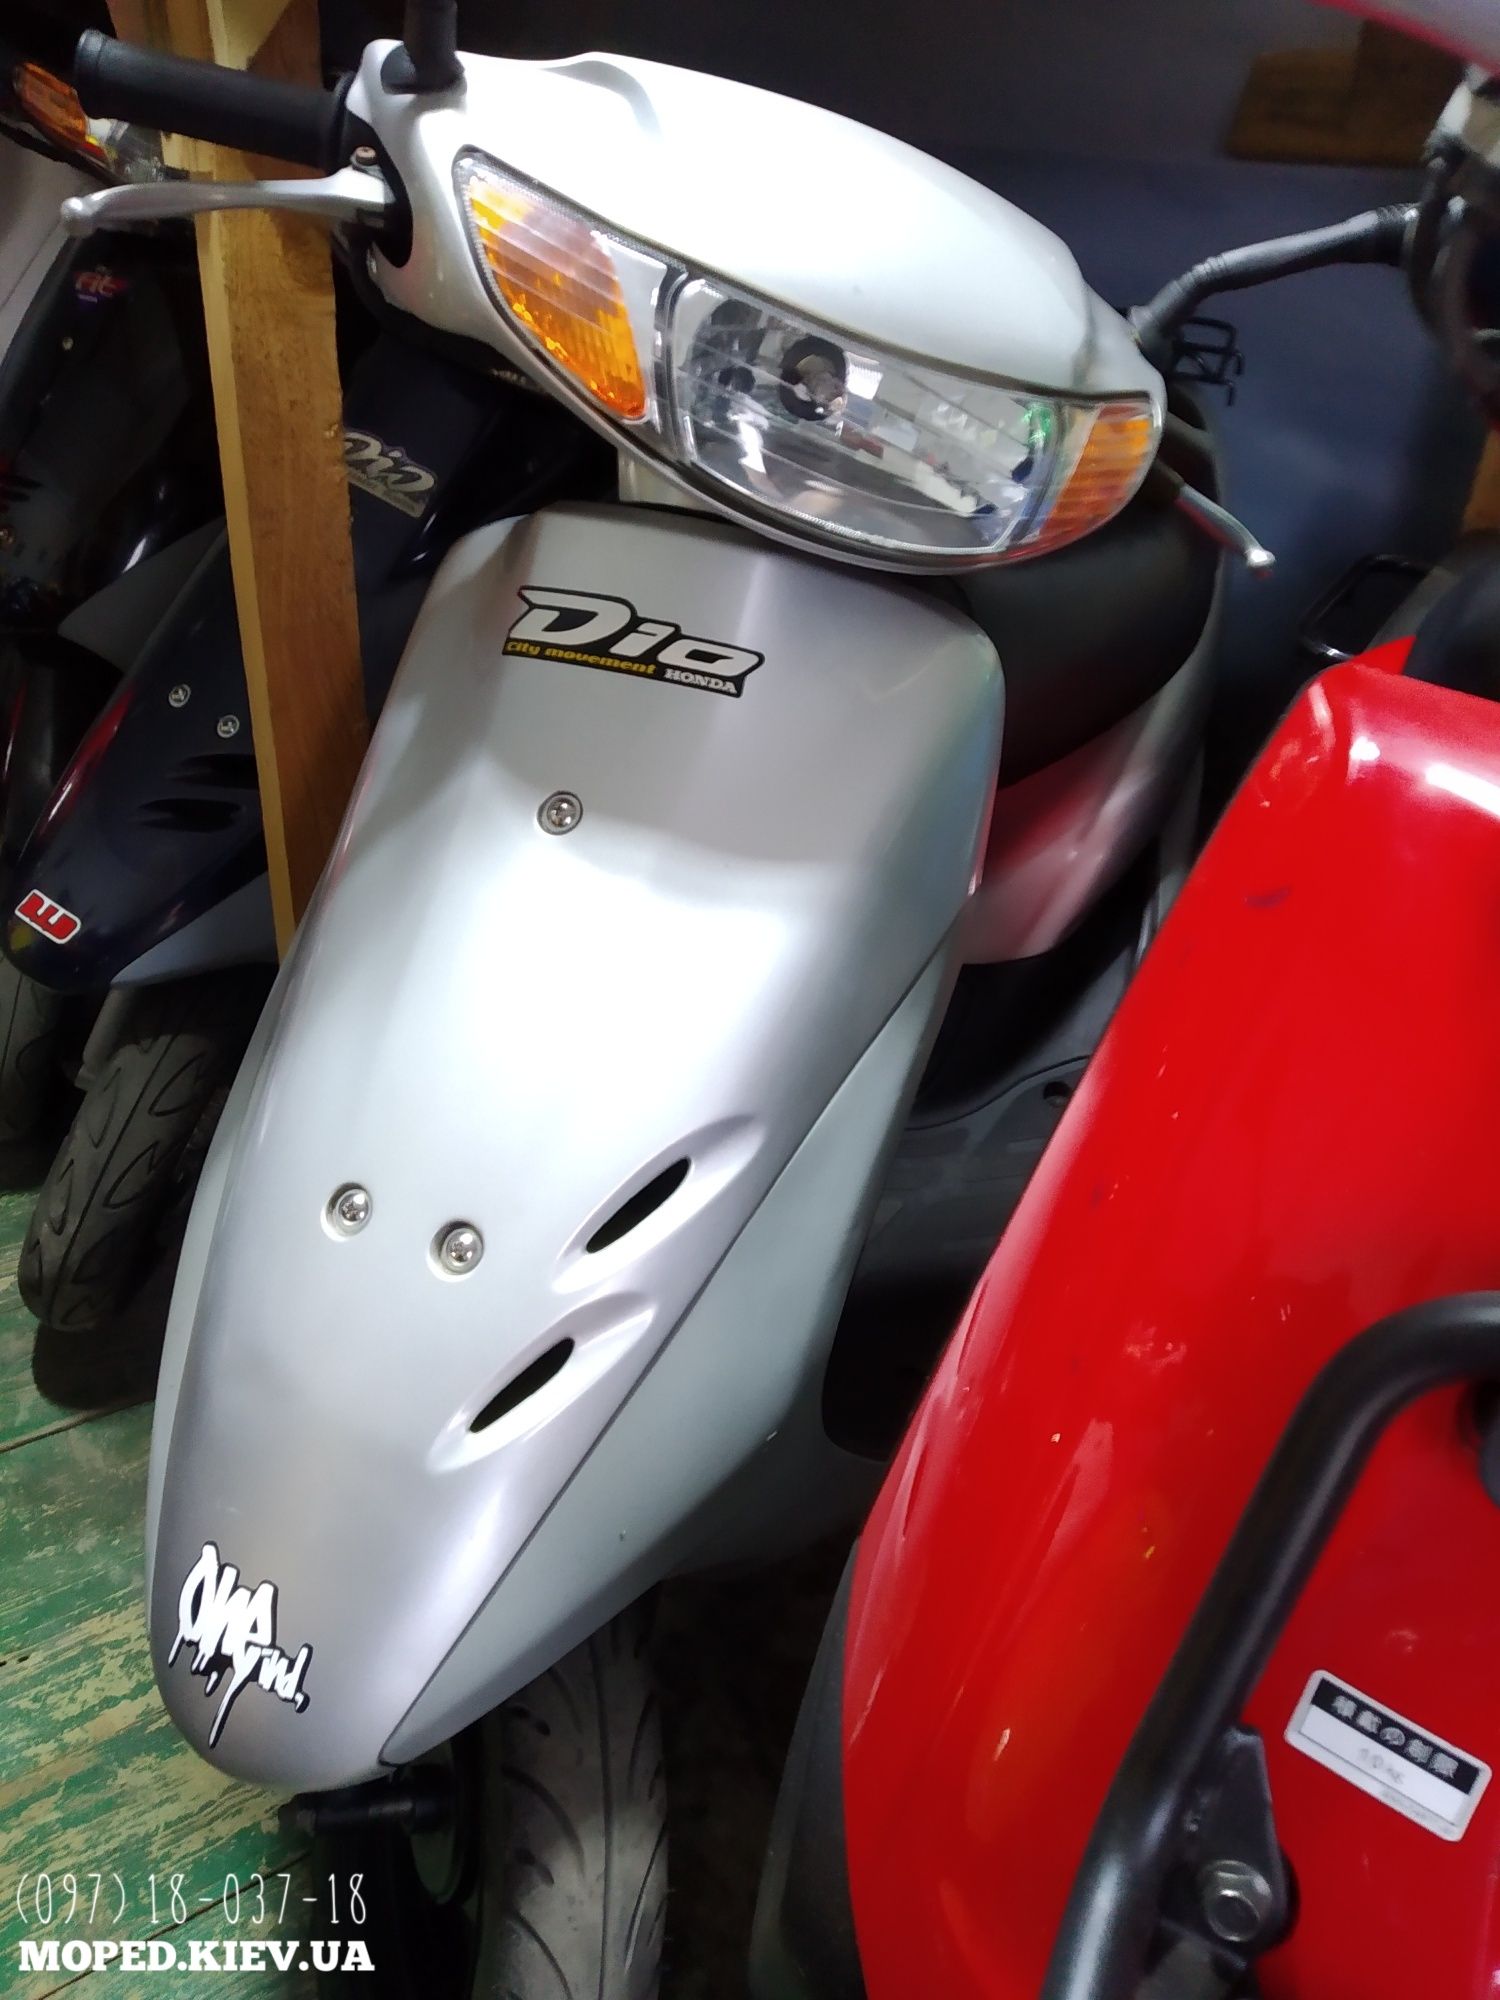 РАСПРОДАЖА! Скутер Honda Tact dio 16 белый купить мопед